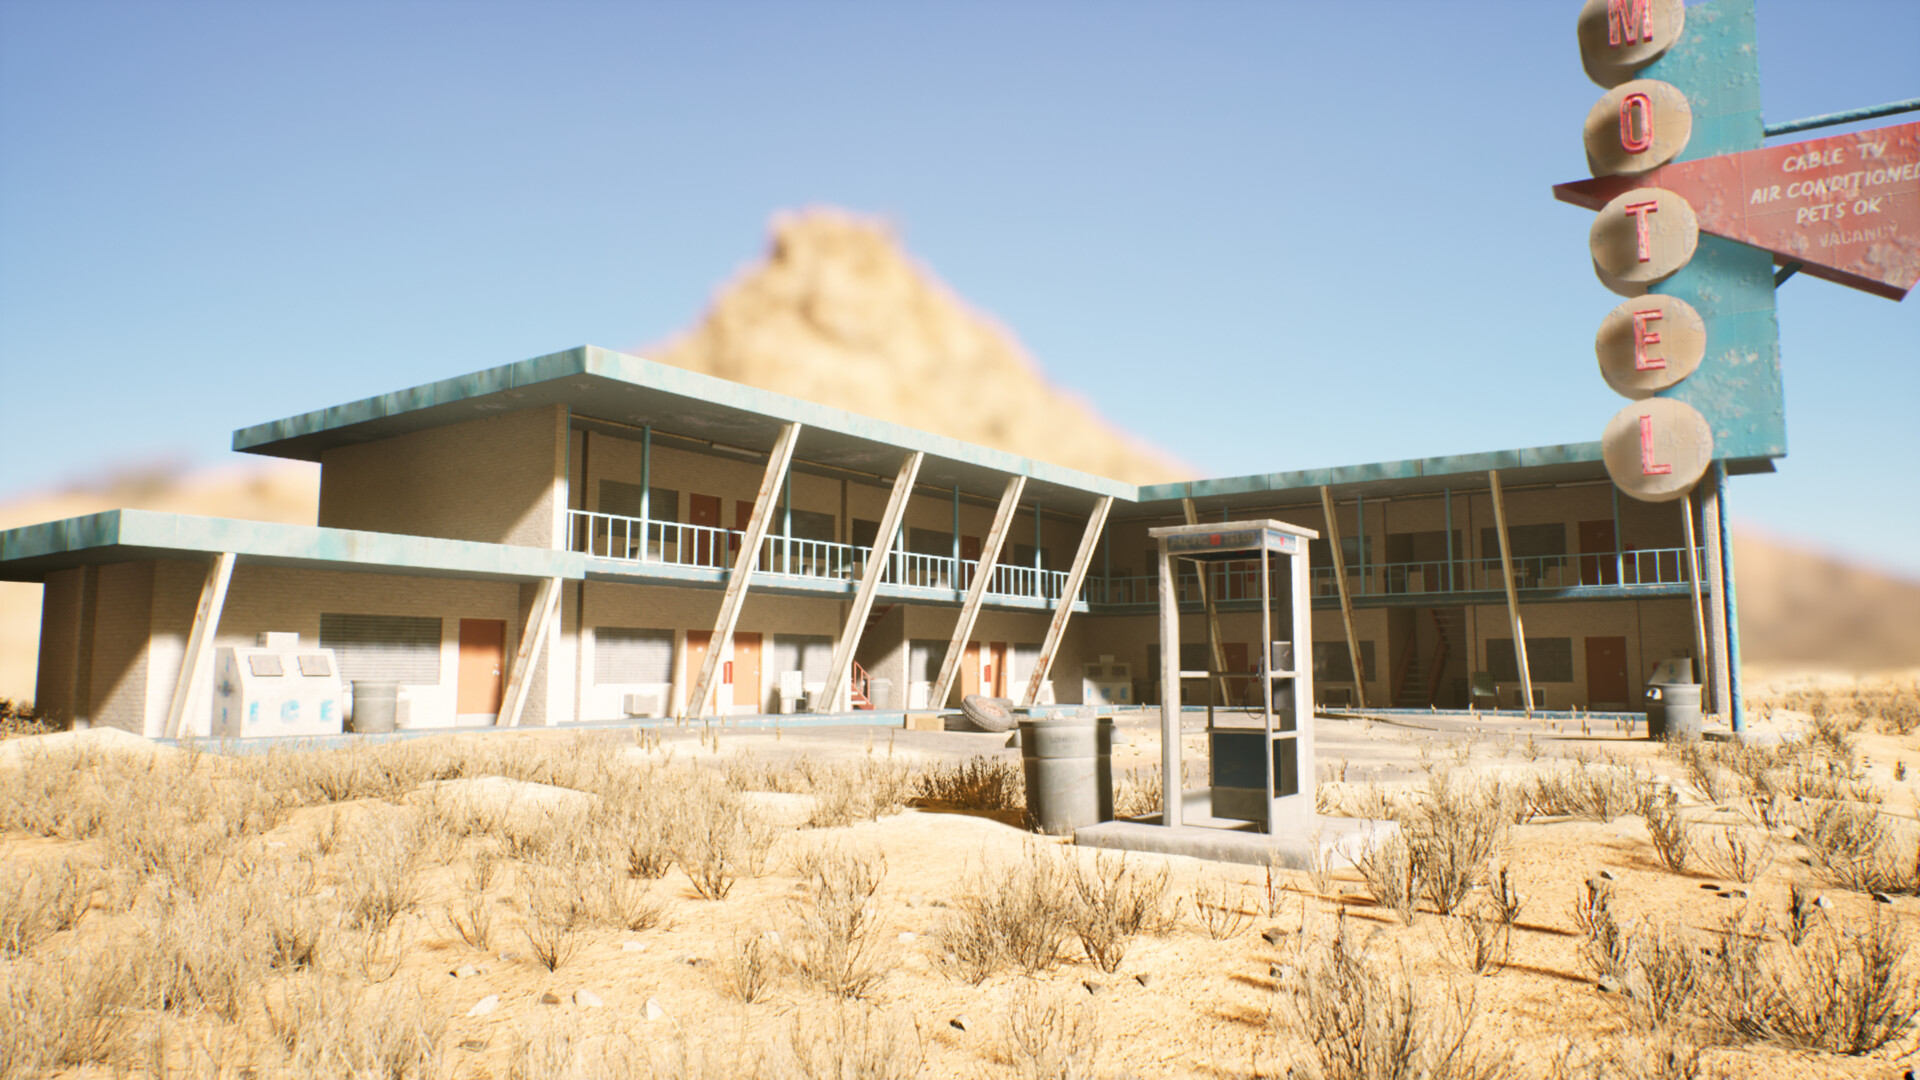 ArtStation - Desert Motel